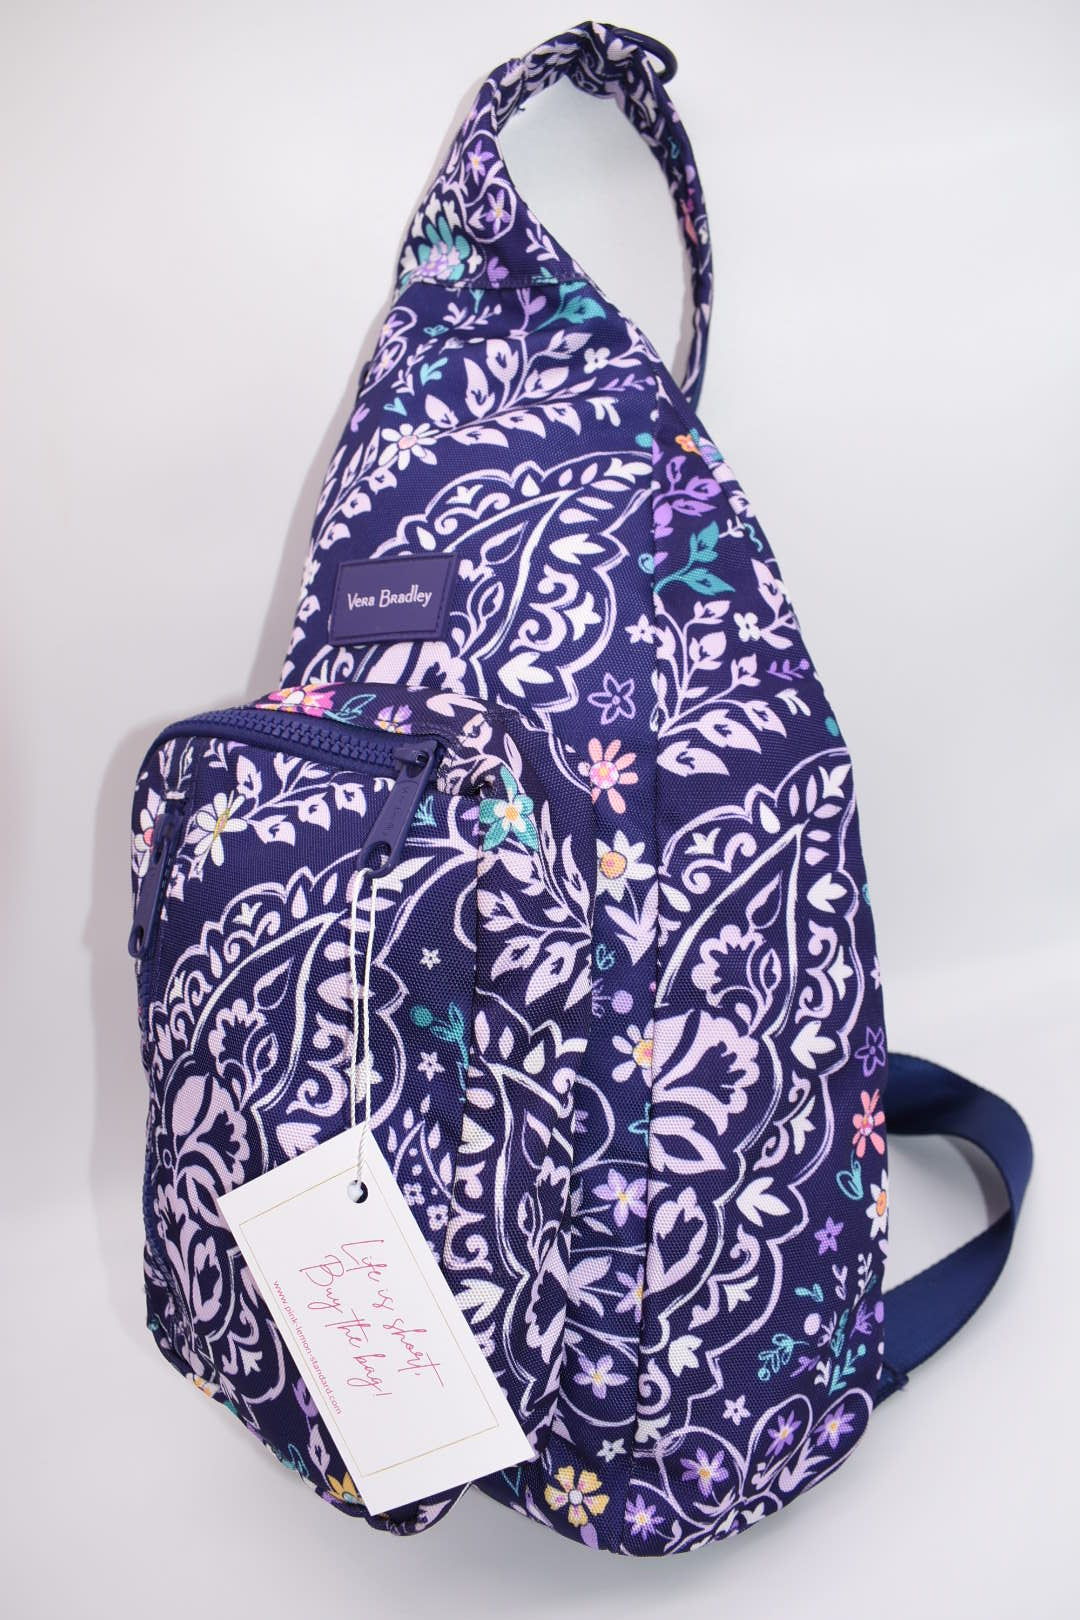 Vera Bradley Reactive Sling Backpack in "Belle Paisley" Pattern